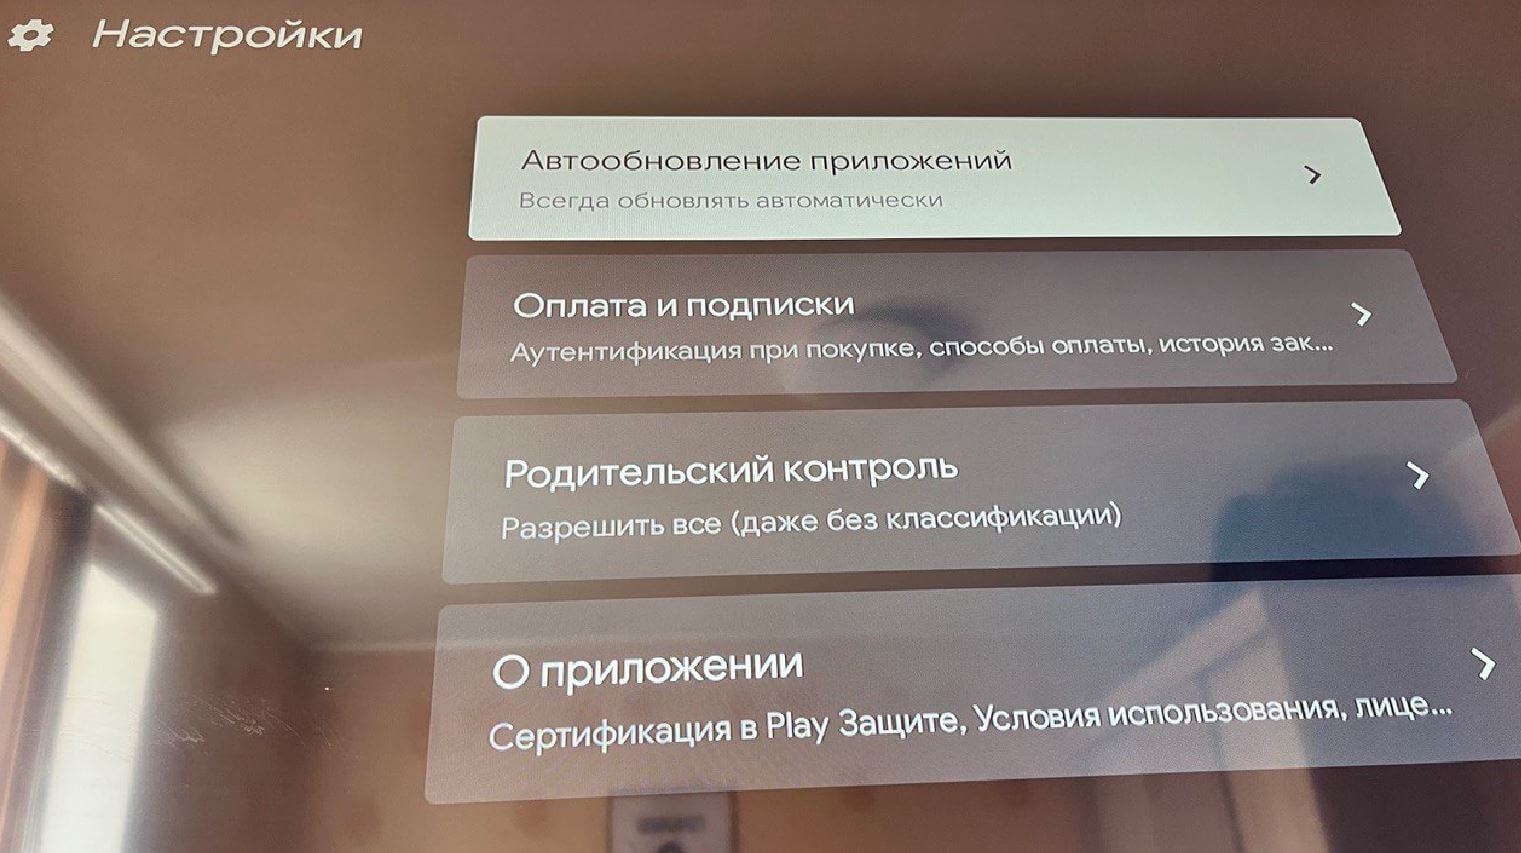 Как обновить приложение телеграмм на андроиде бесплатно на русском языке фото 90